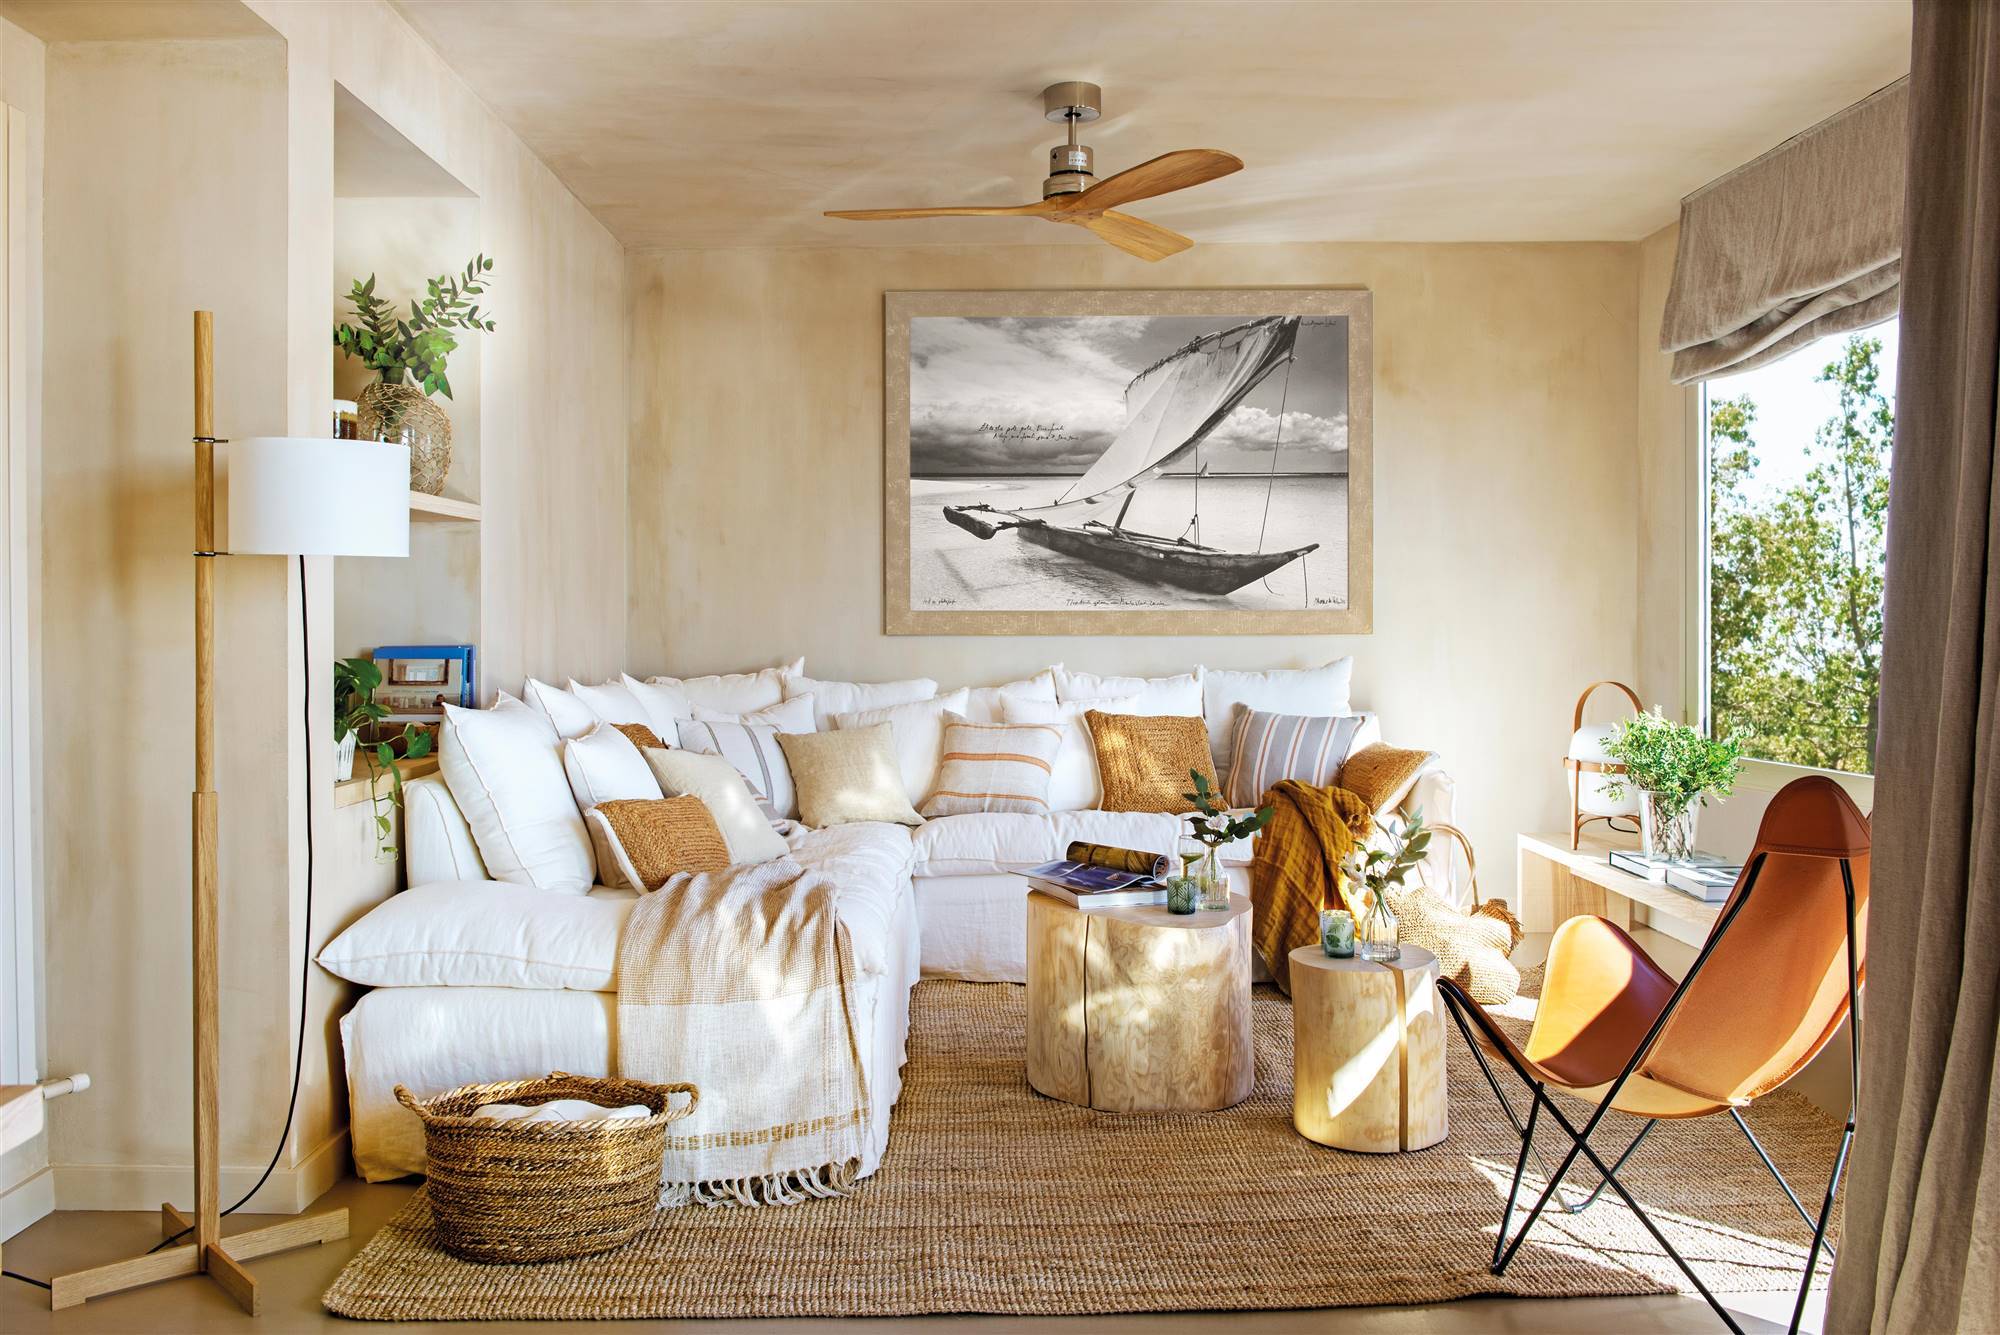 Salón con sofá blanco rinconera, alfombra de fibras y mesas auxiliares de madera tipo tronco 00525479